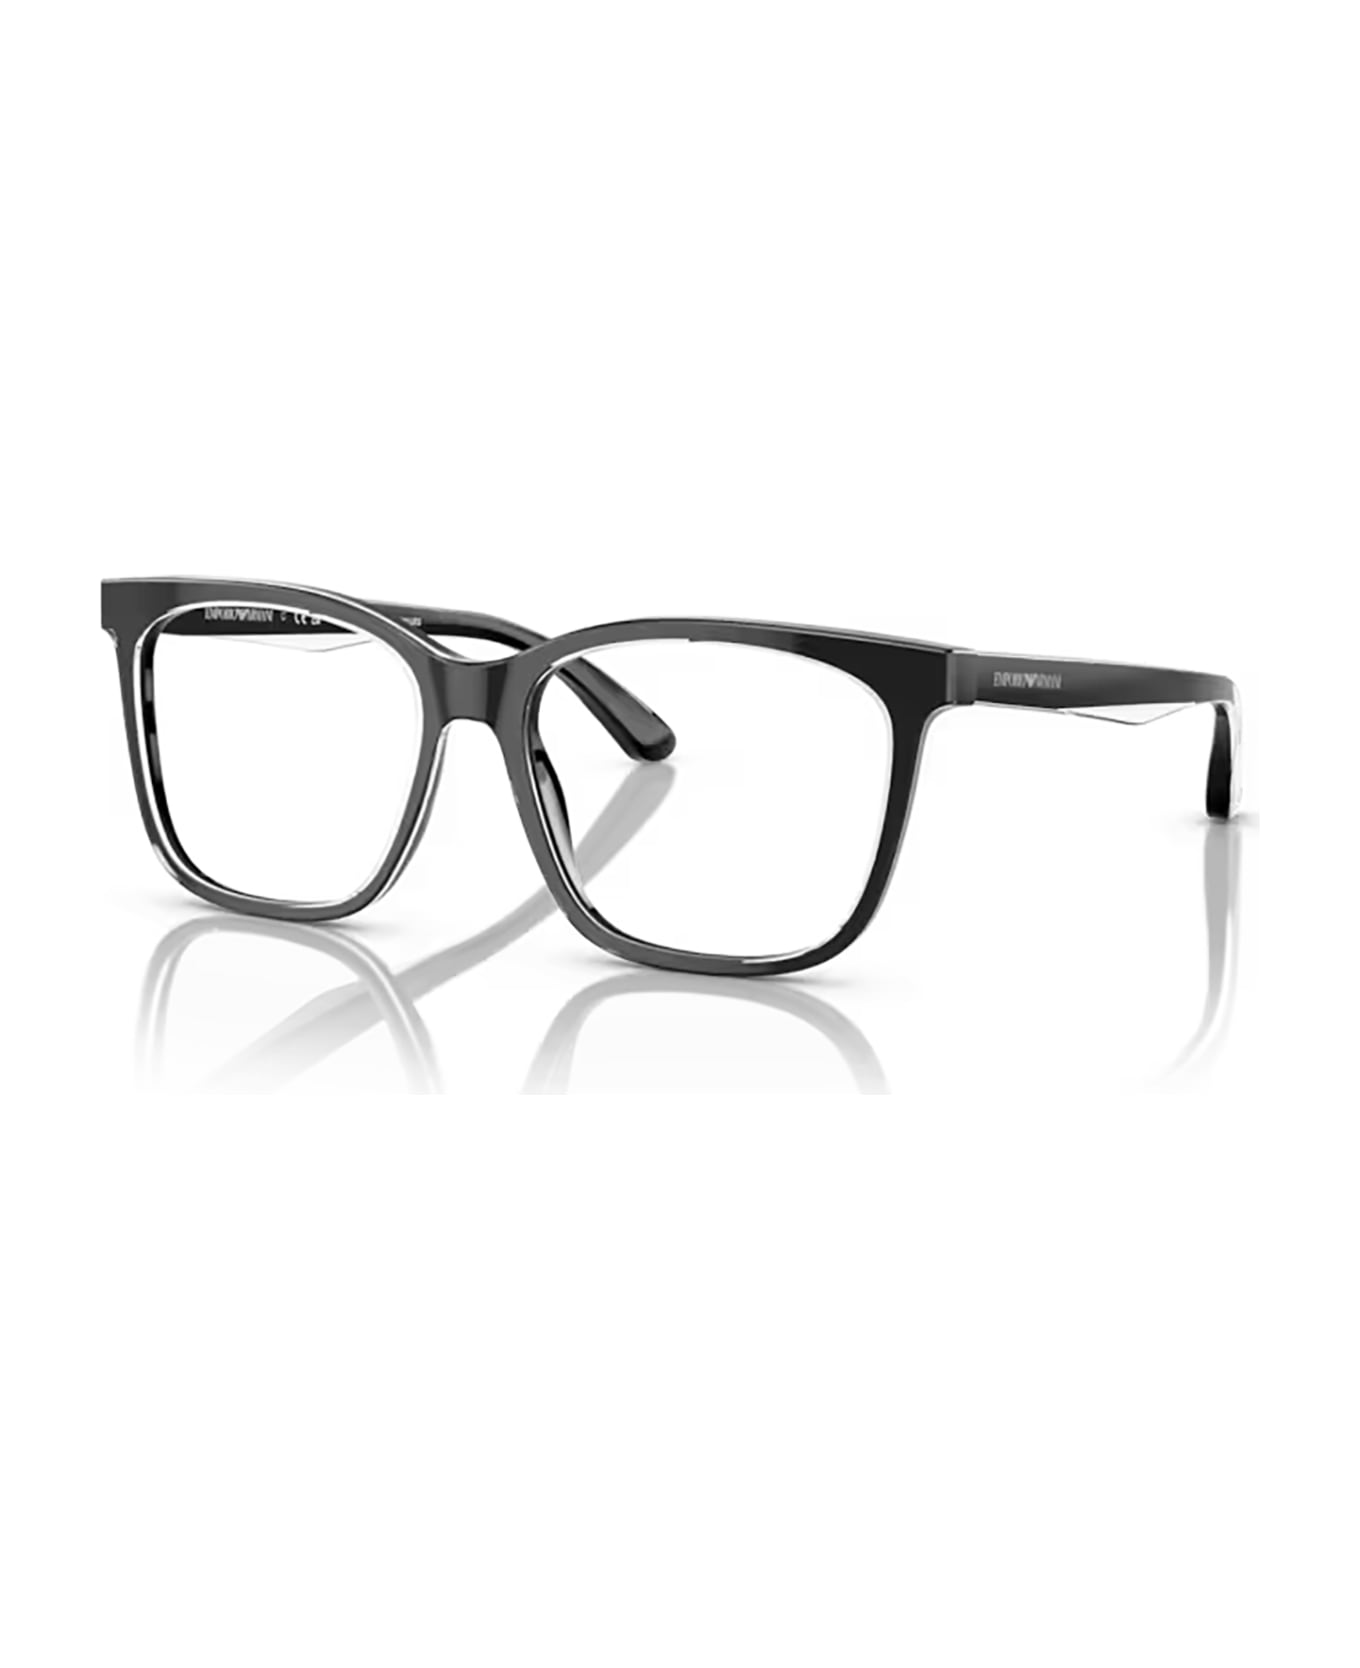 Emporio Armani Ea3228 Shiny Black / Top Crystal Glasses - Shiny Black / Top Crystal アイウェア